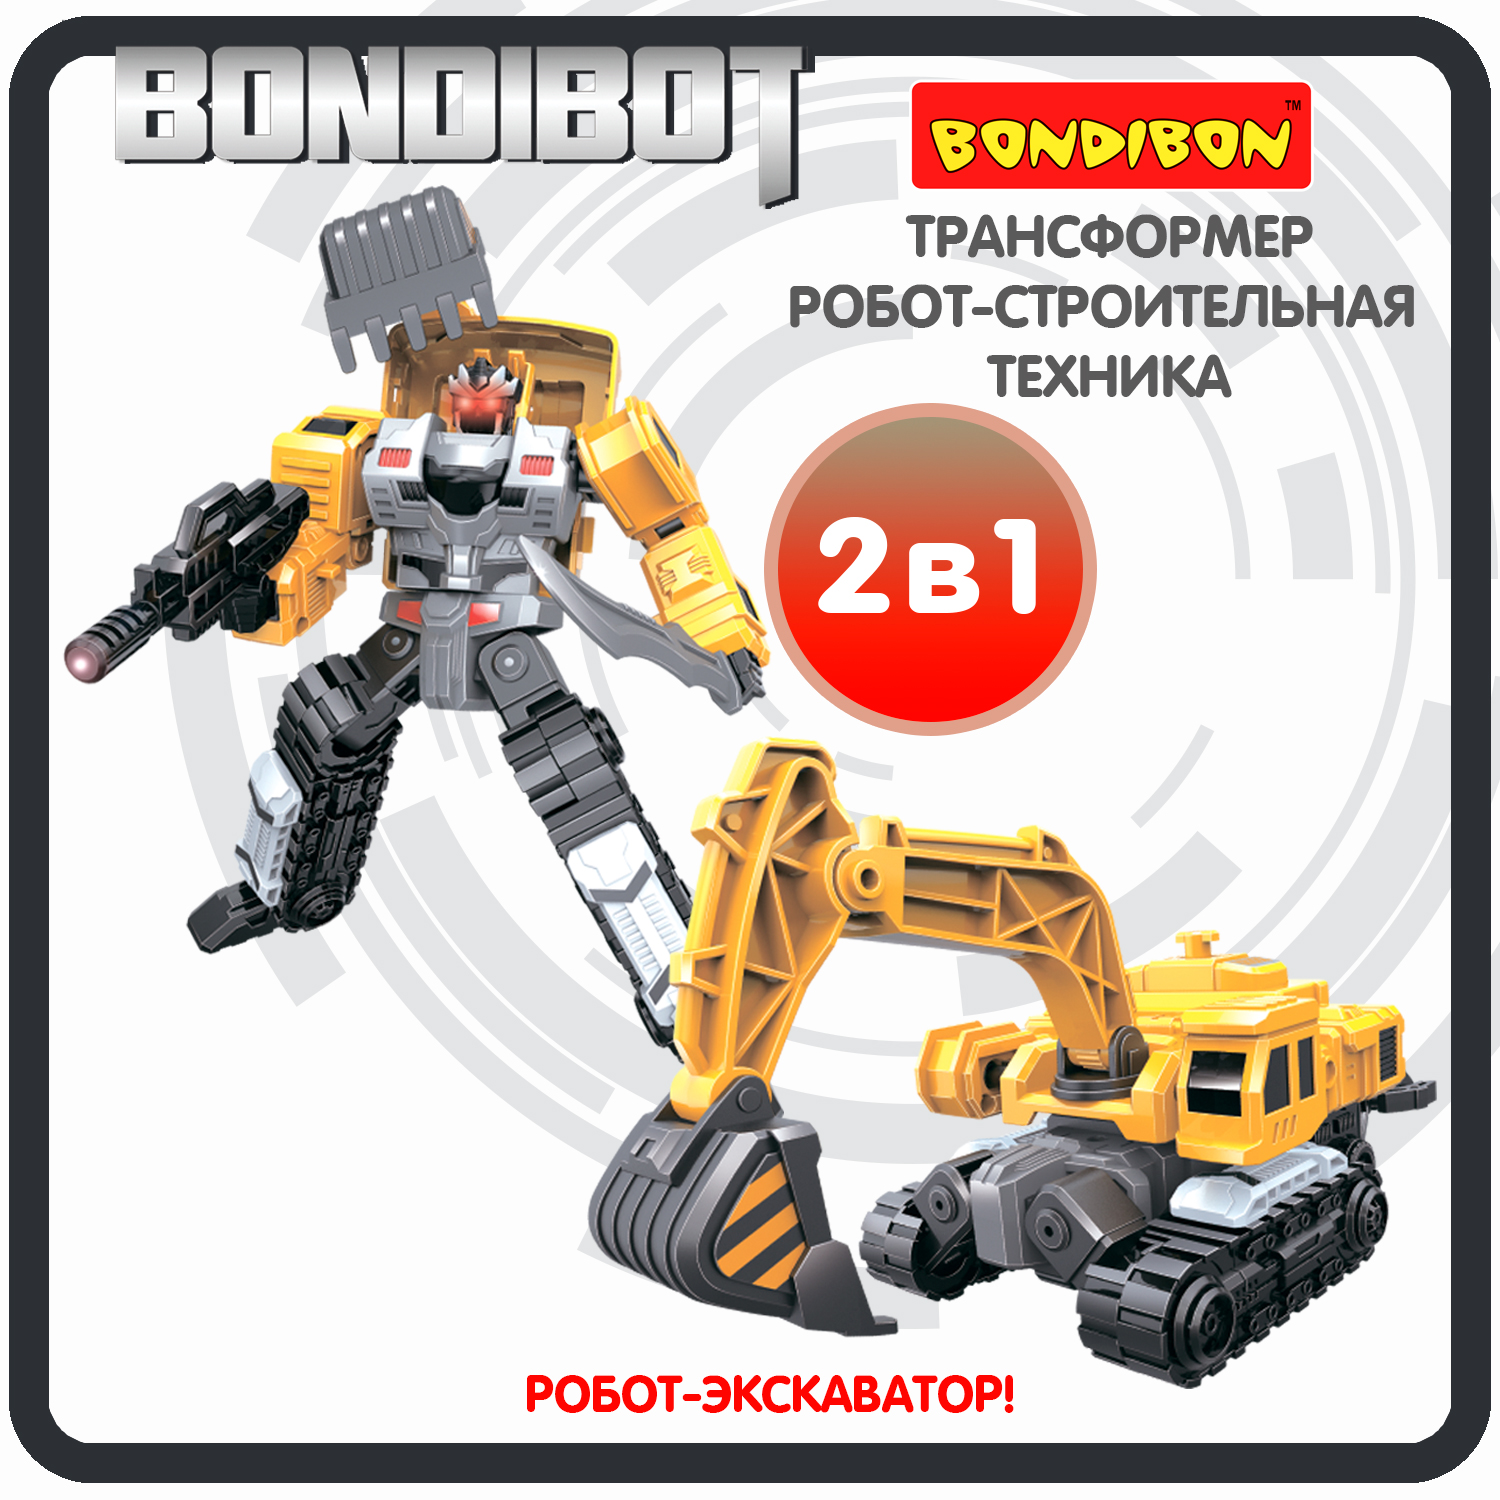 Трансформер робот-строительная техника, 2в1 BONDIBOT Bondibon, экскаватор / ВВ6048 bondibon трансформер bondibot 2 в 1 робот экскаватор